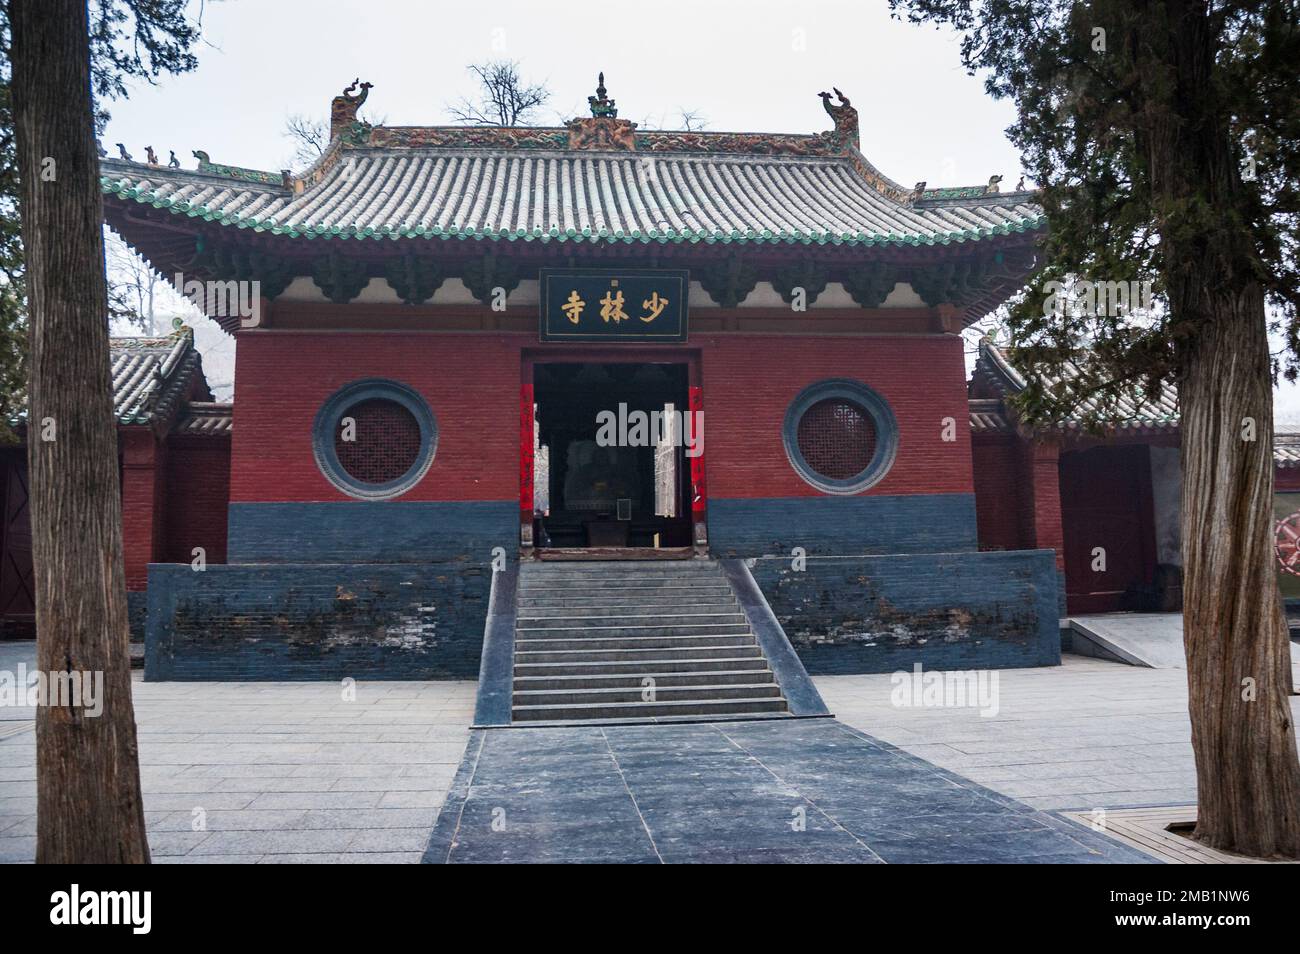 Dengfeng, China – 02012009: Shaolin-Tempel, UNESCO-Weltkulturerbe. Auf dem Schild auf dem Gebäude steht "Chinese Shaolin Temple". Stockfoto